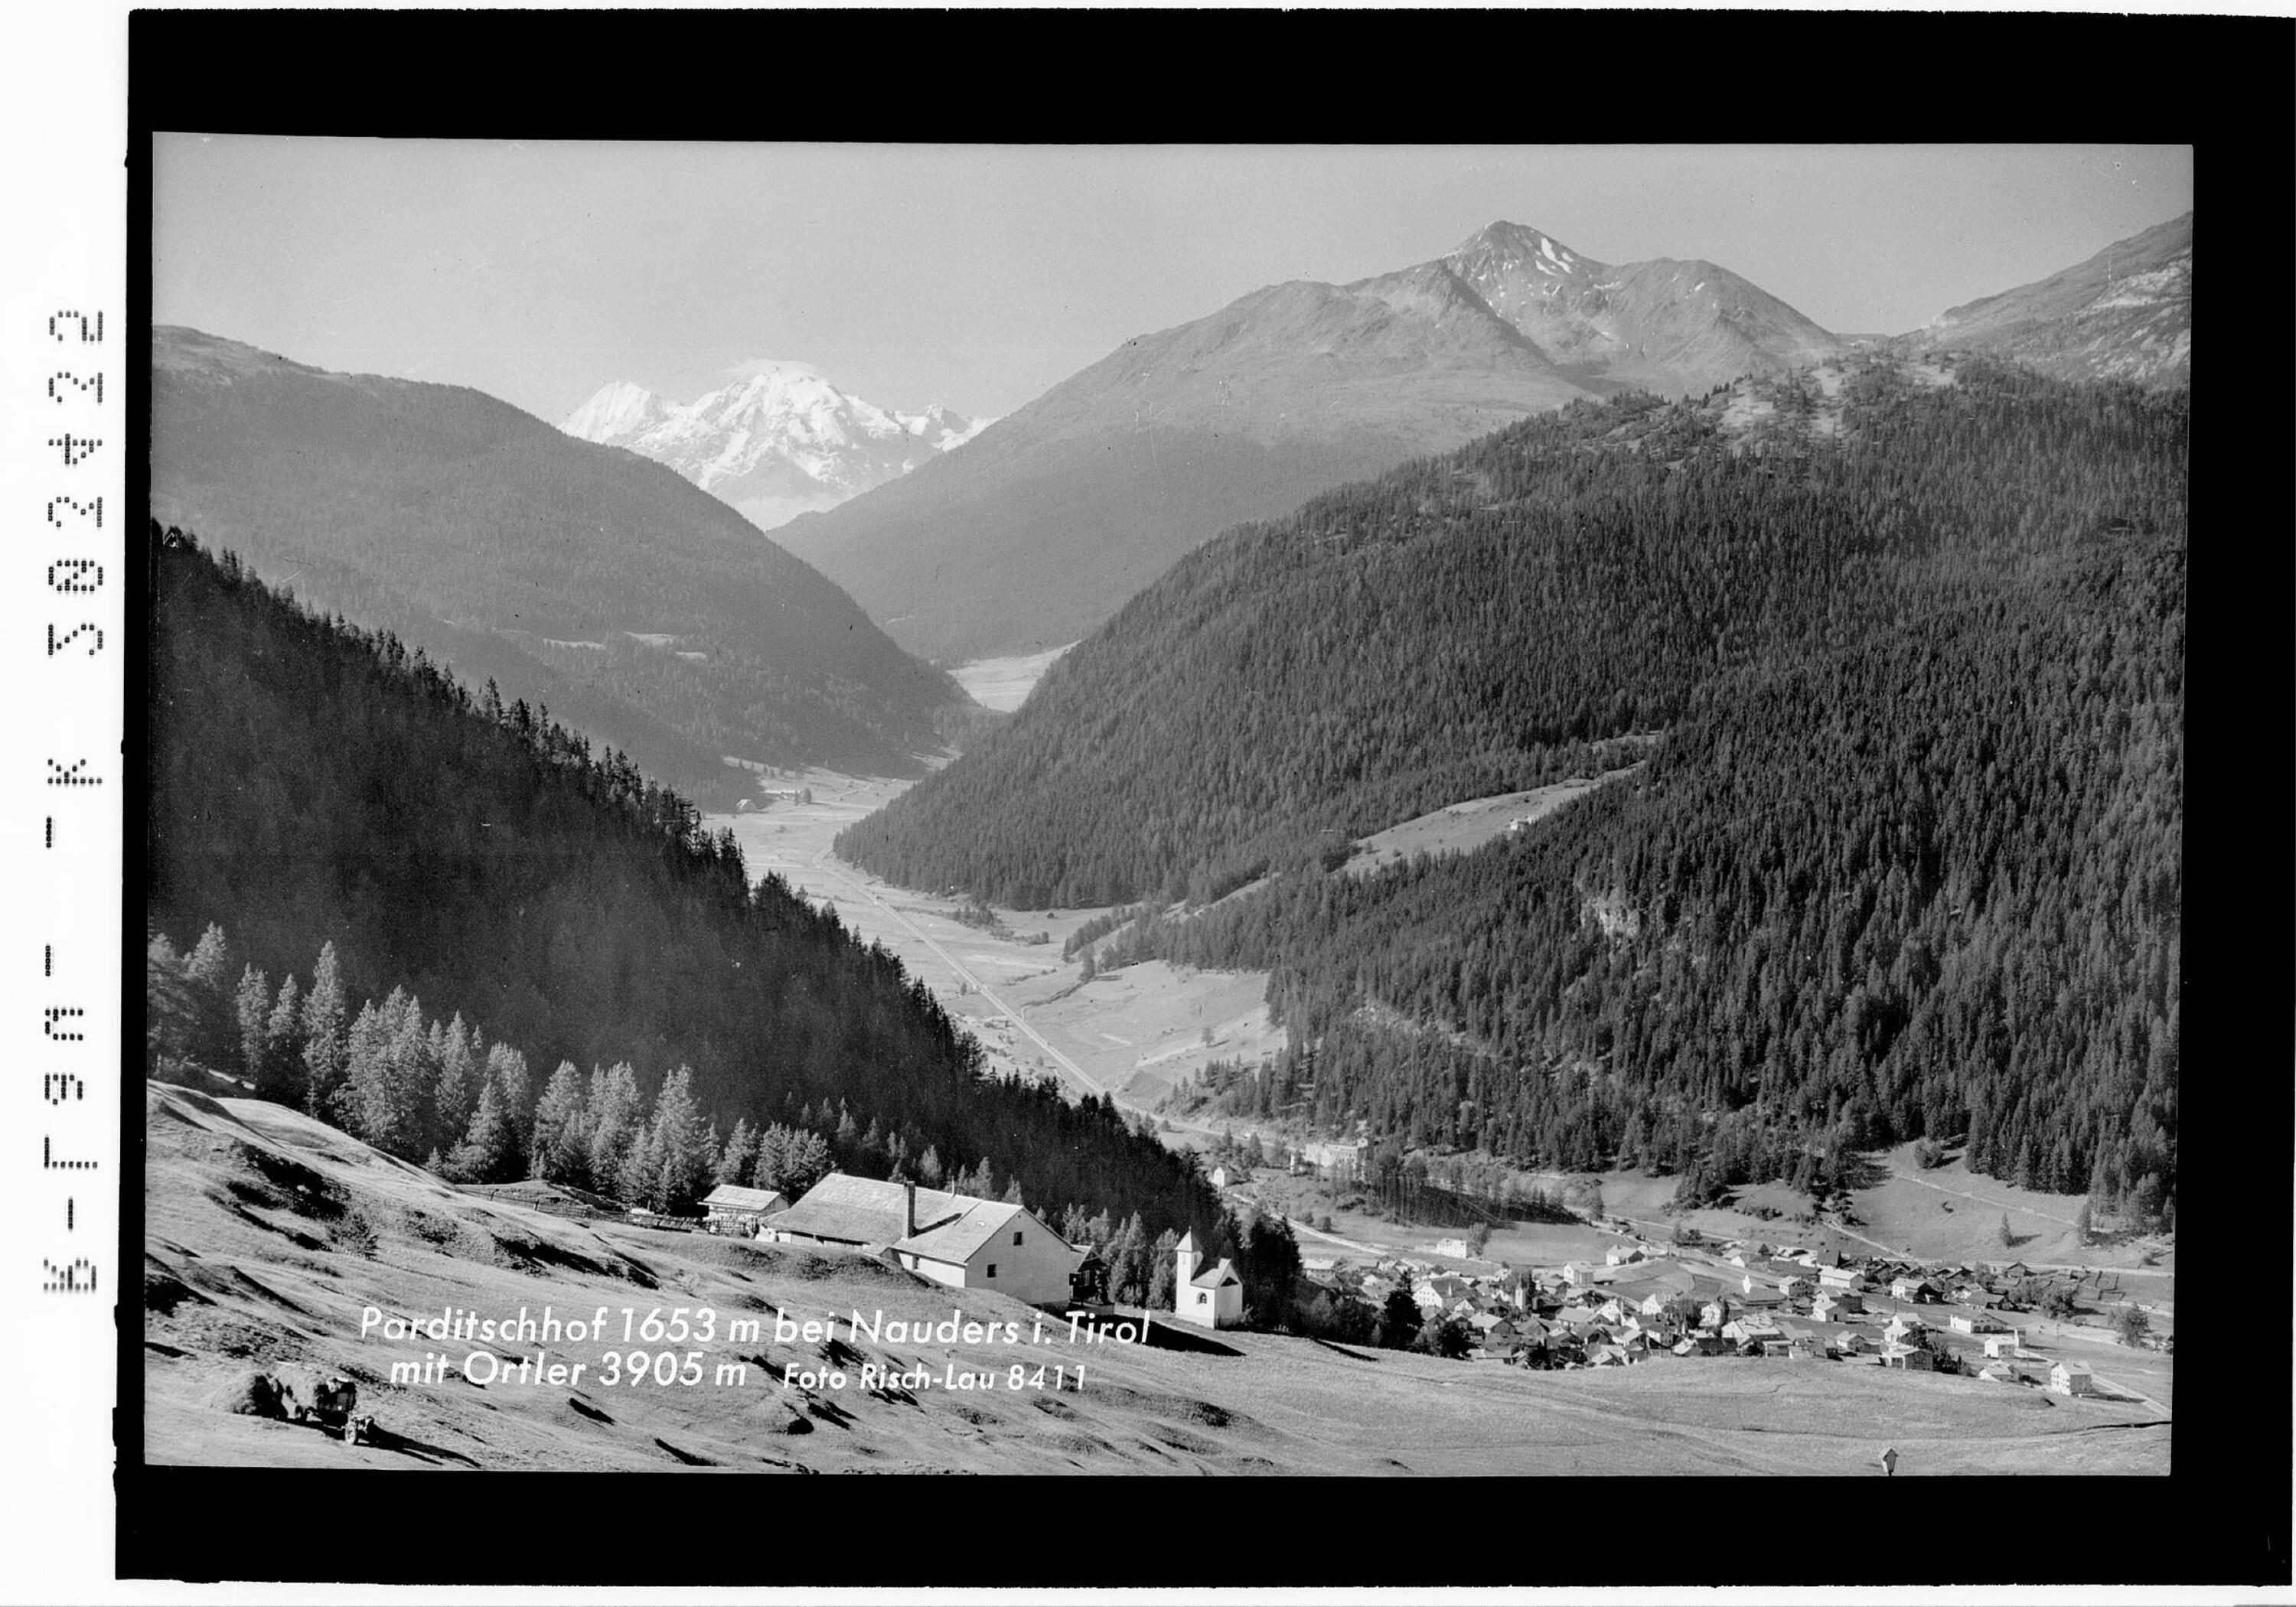 Parditschhof 1653 m bei Nauders in Tirol mit Ortler 3905 m></div>


    <hr>
    <div class=